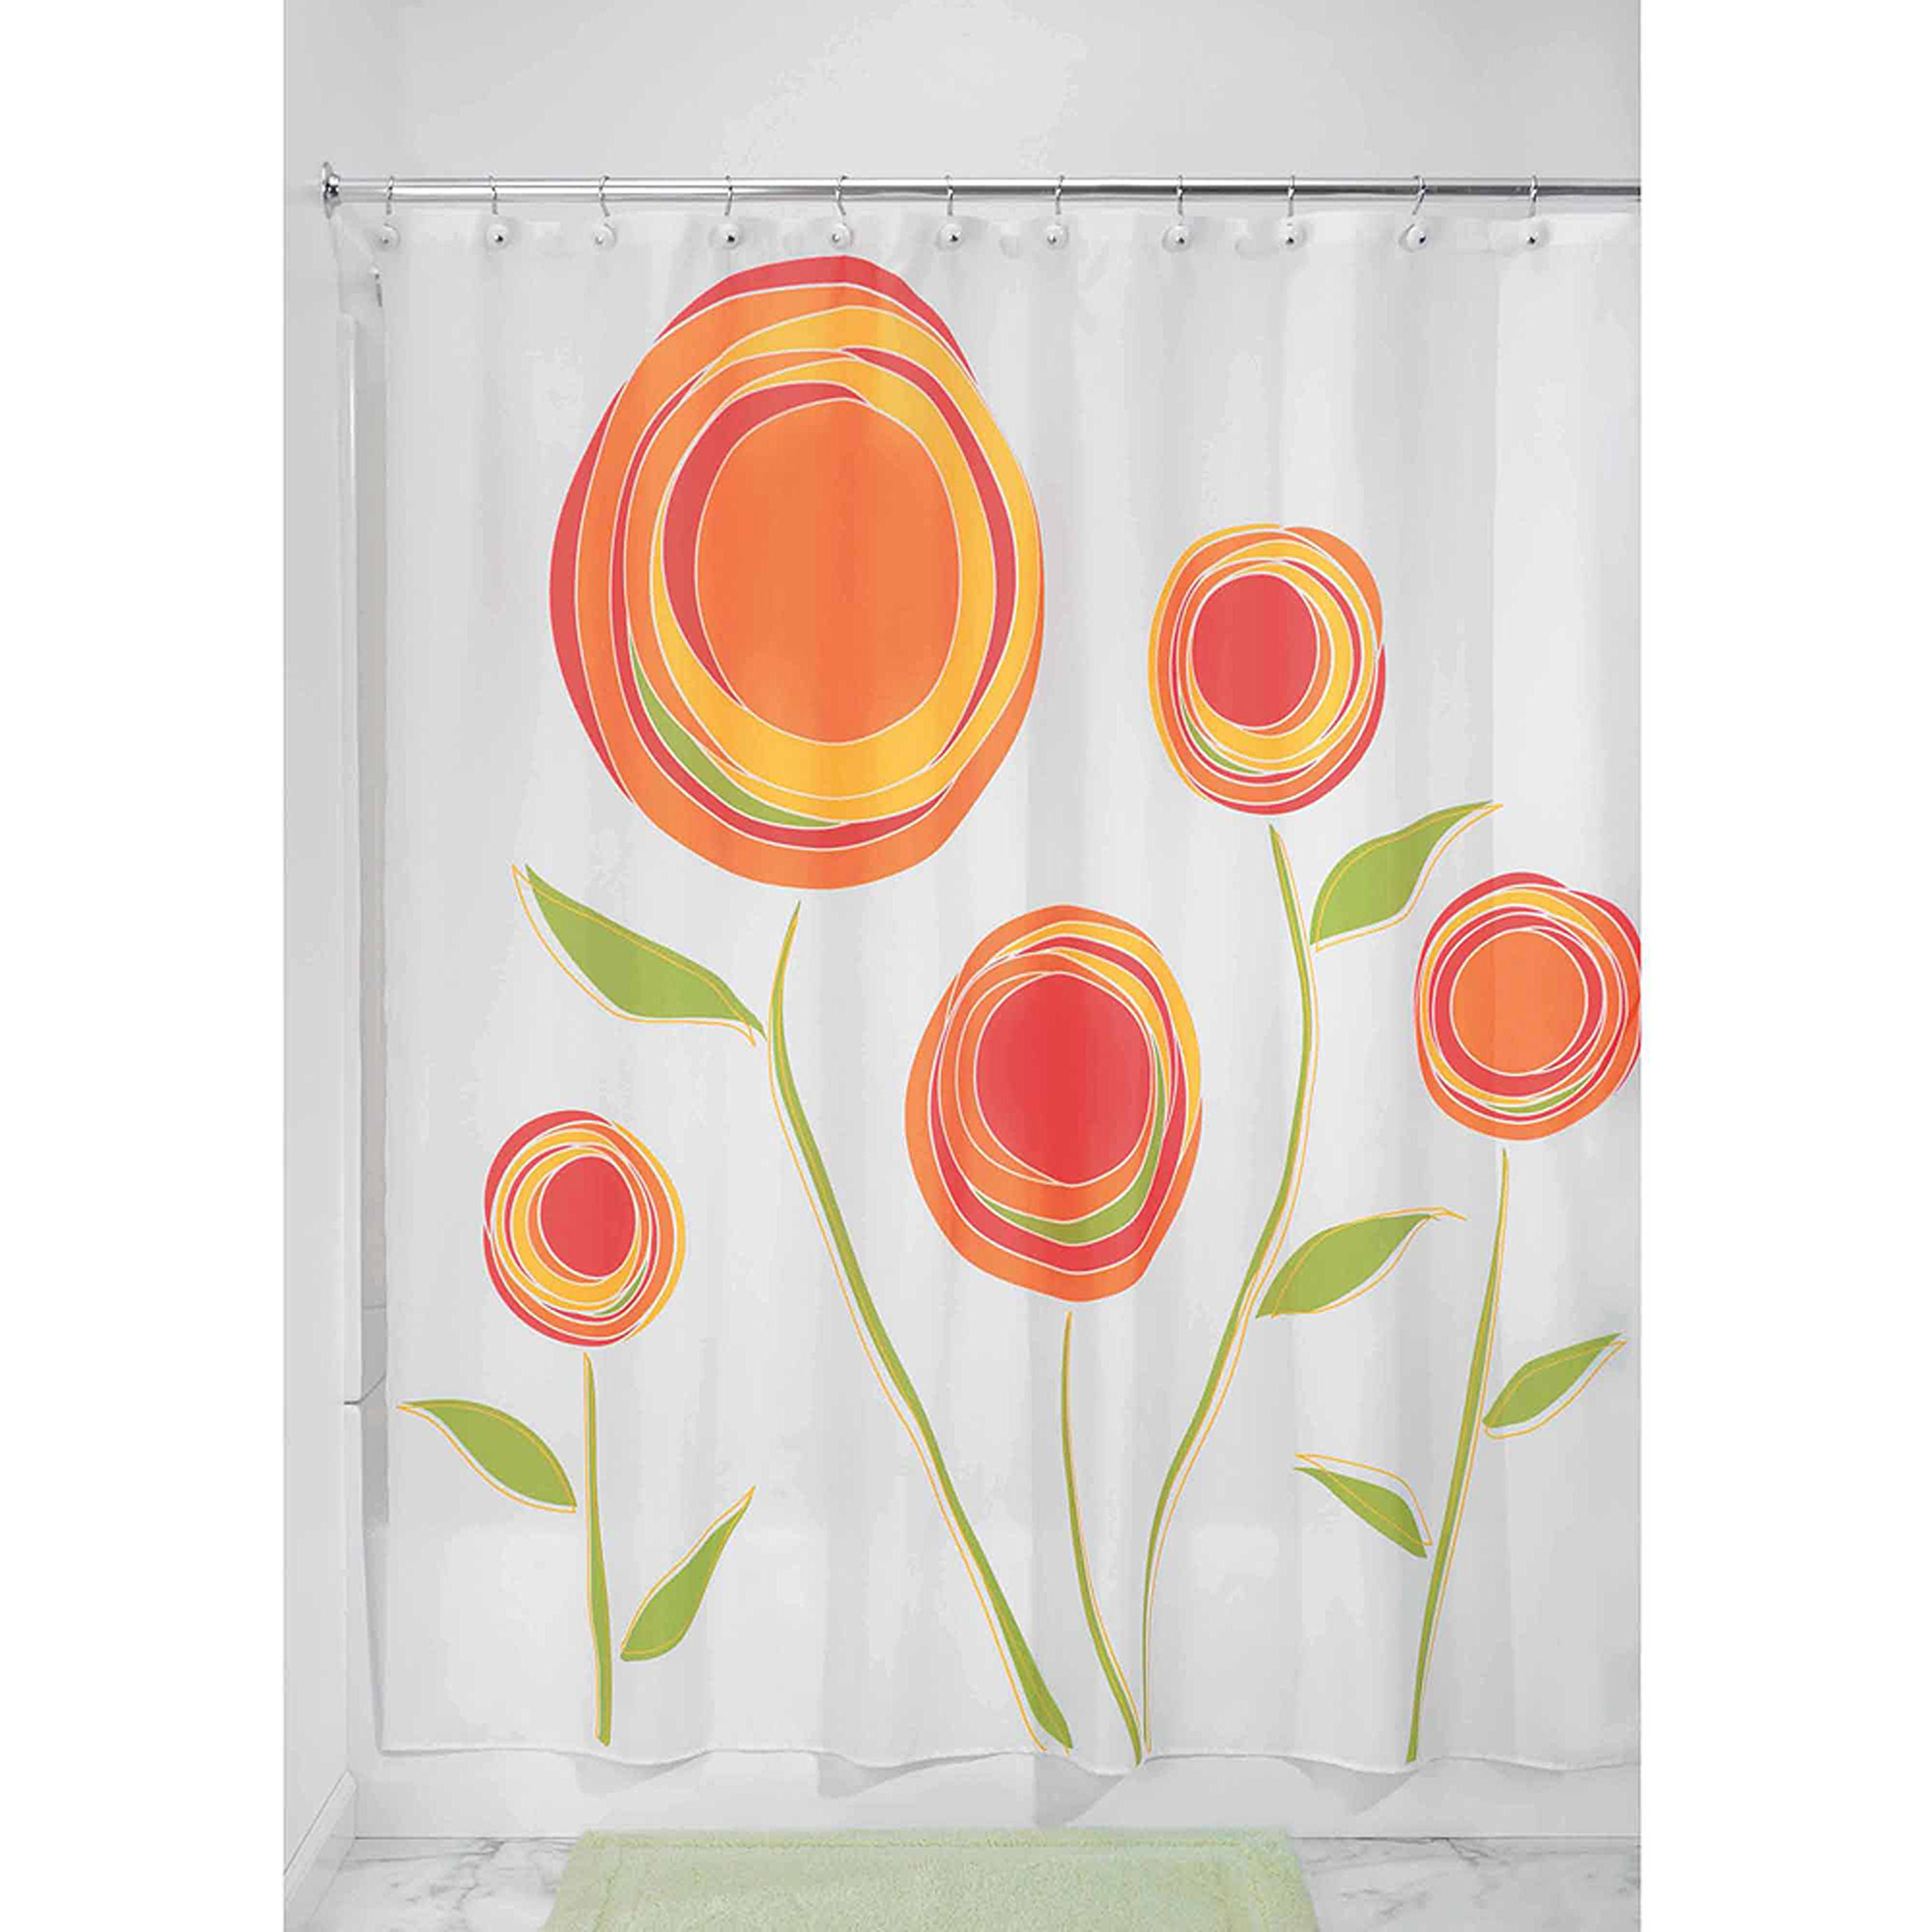 InterDesign 37120 72" X 72" Red & Orange Marigold Shower Curtain